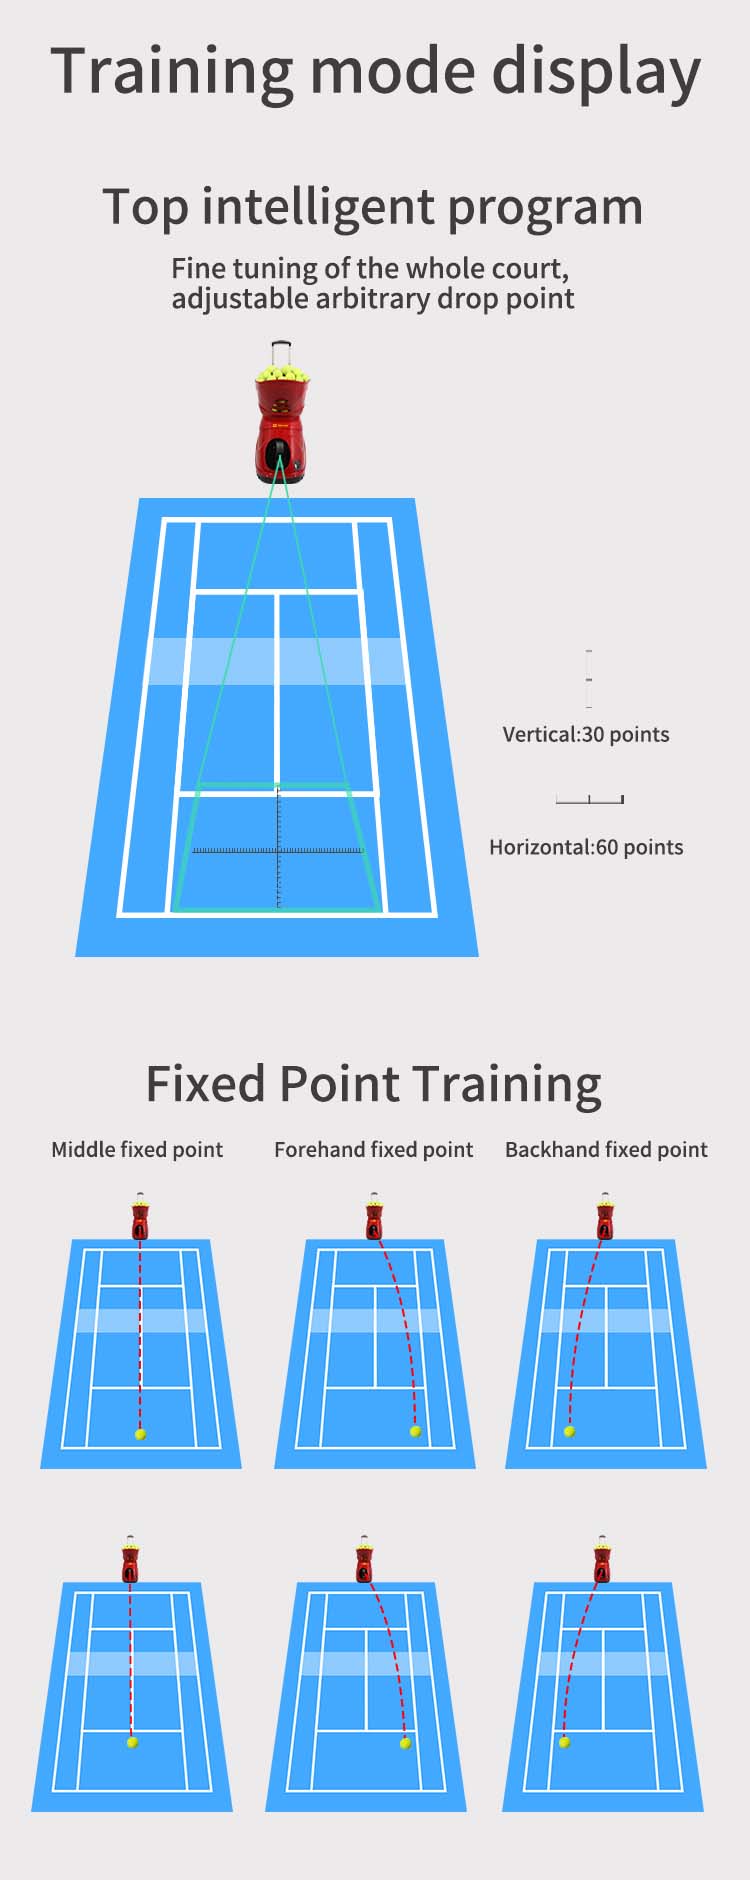 Tennis drills machine trainging